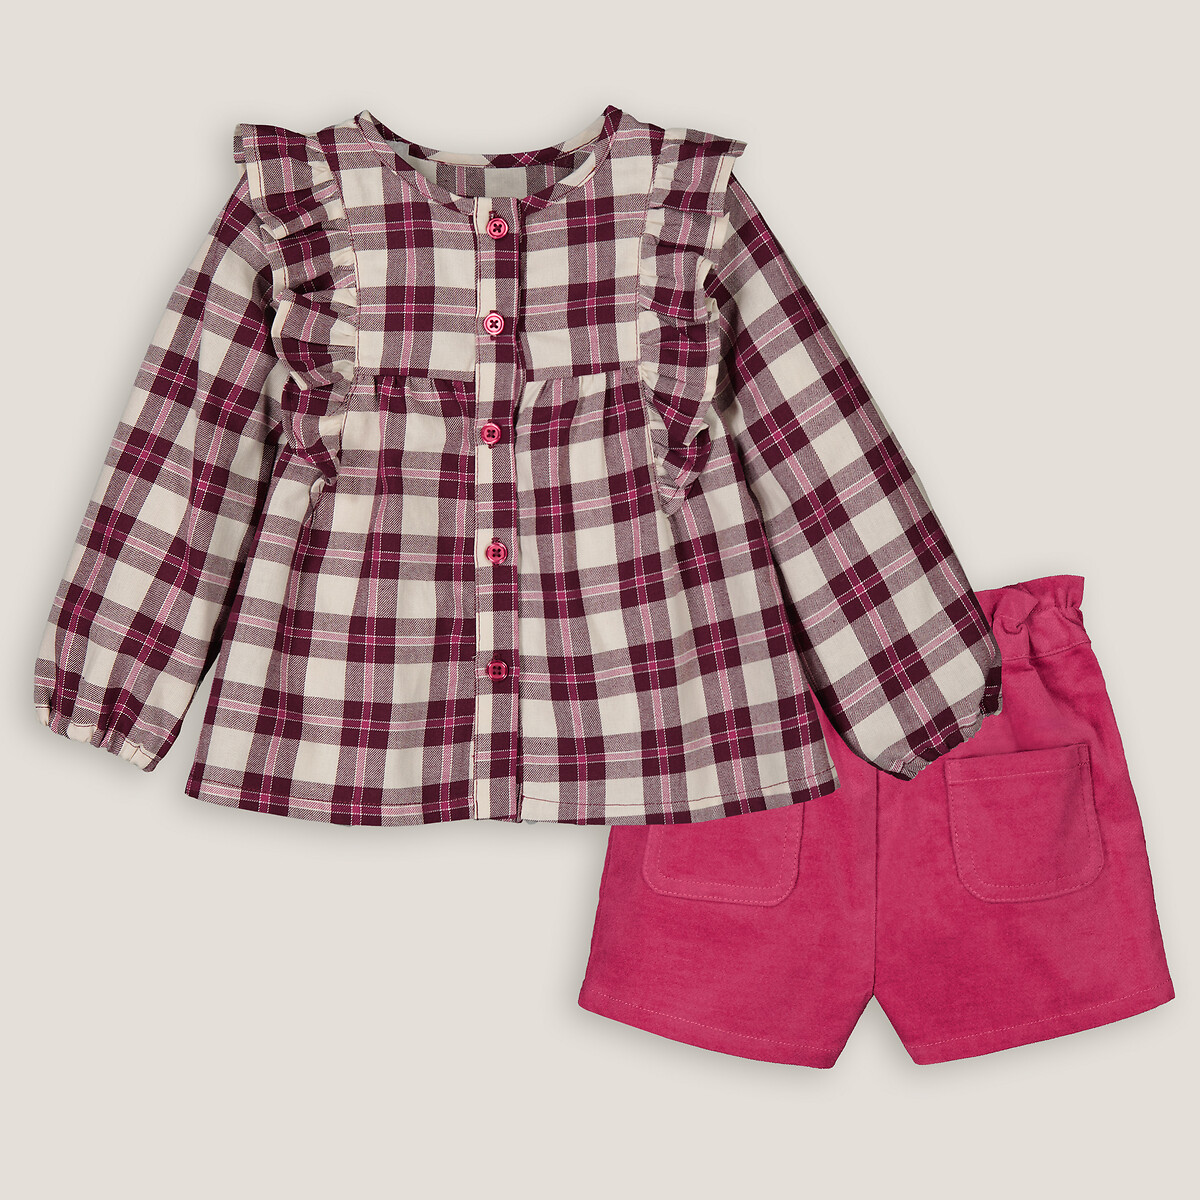 Комплект из двух вещей блузка и шорты 5 лет - 108 см розовый набор из двух комплектов из футболок и шорт 5 лет 108 см разноцветный